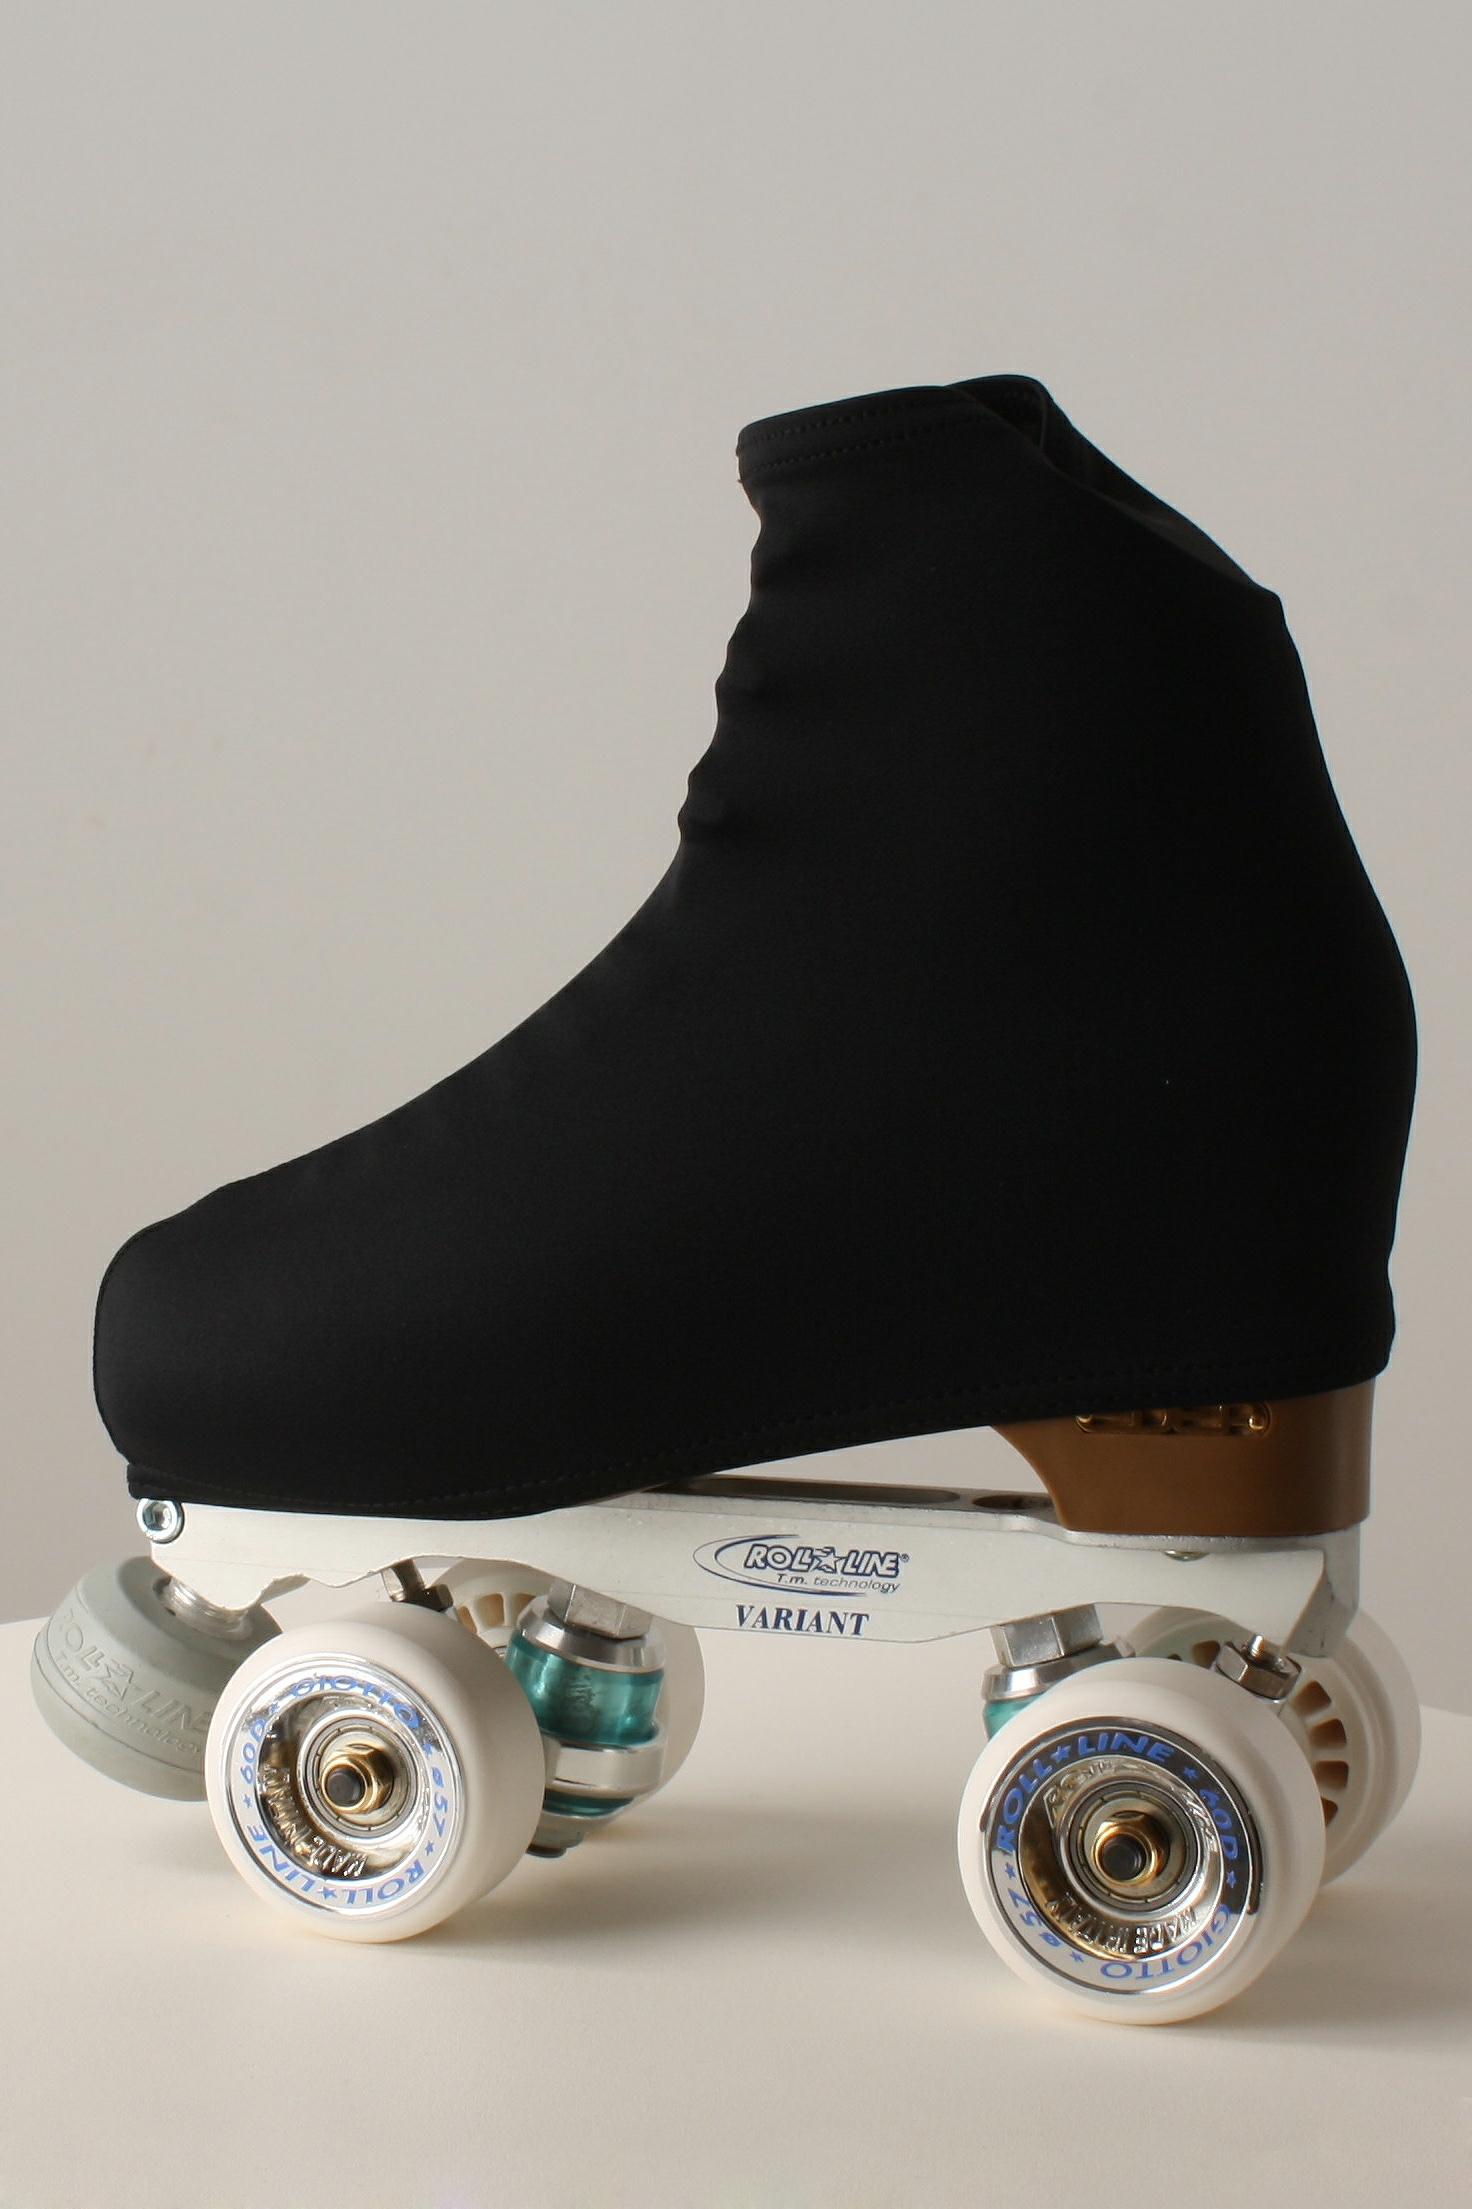 CALZITALY 70 DEN - Fundas para botas de patinaje sobre ruedas, para mujeres  y niñas (negro/piel)